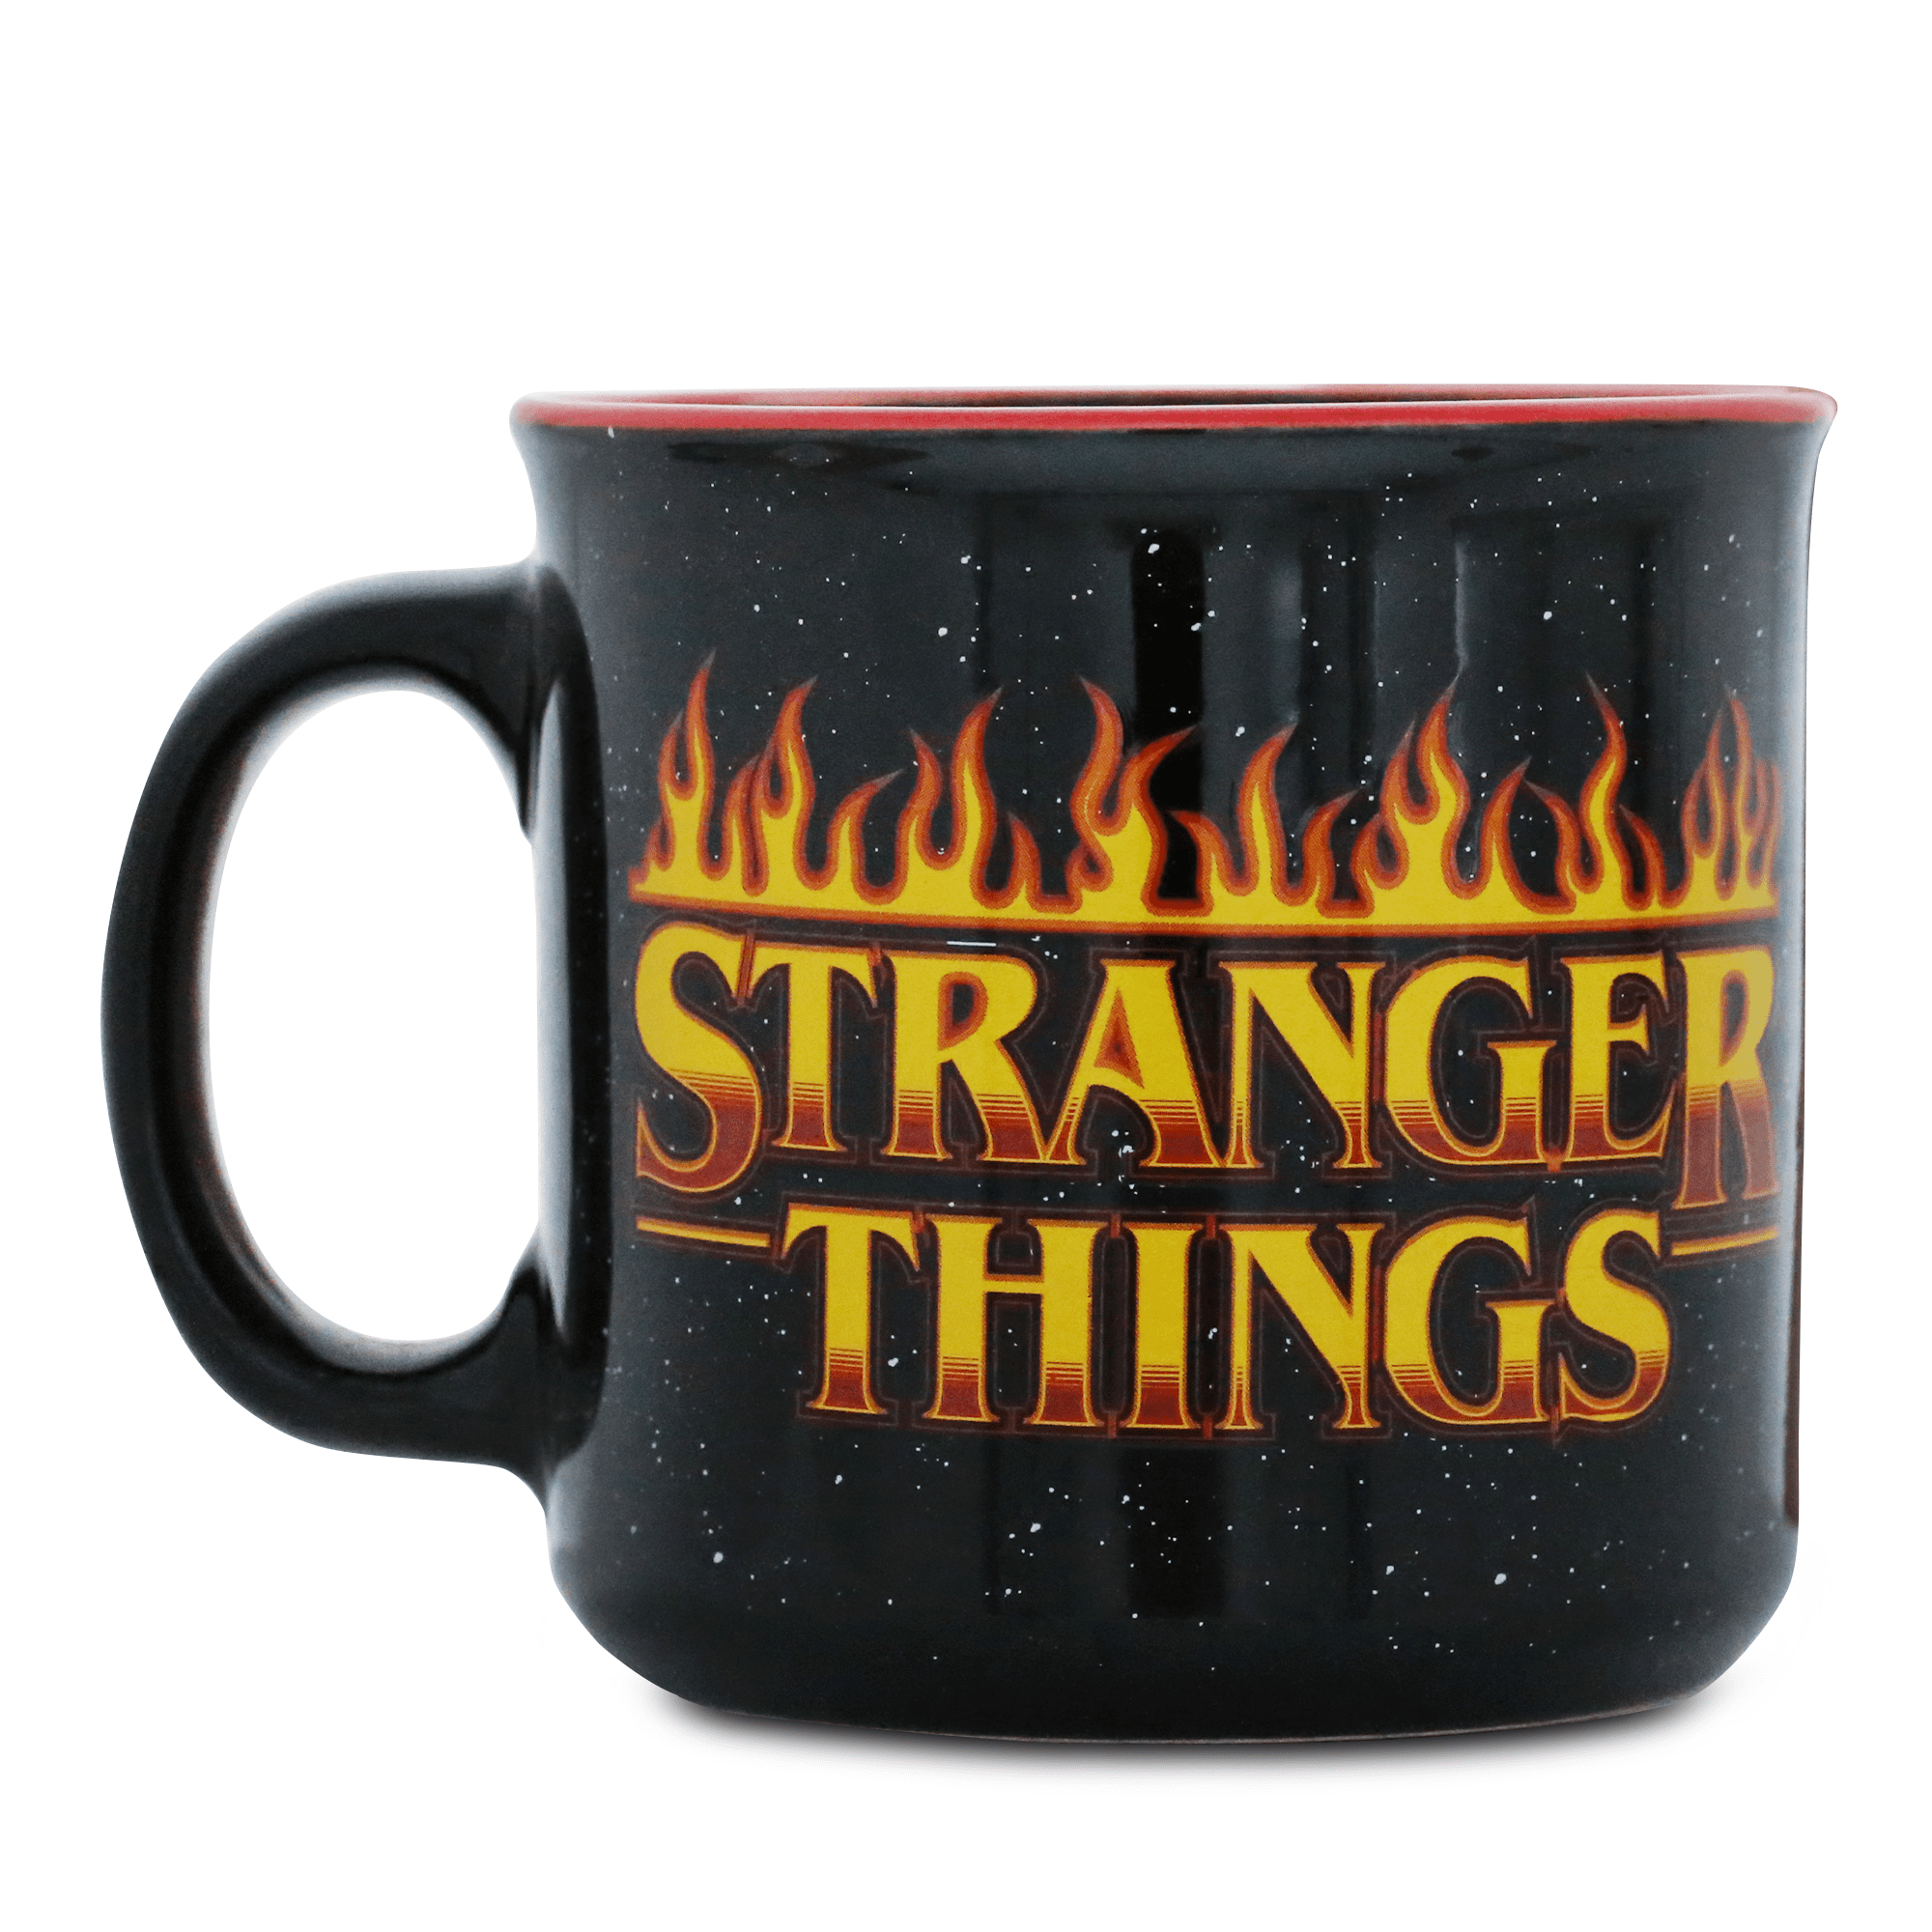 Stranger things Mug & Gift Set Key Ring Black